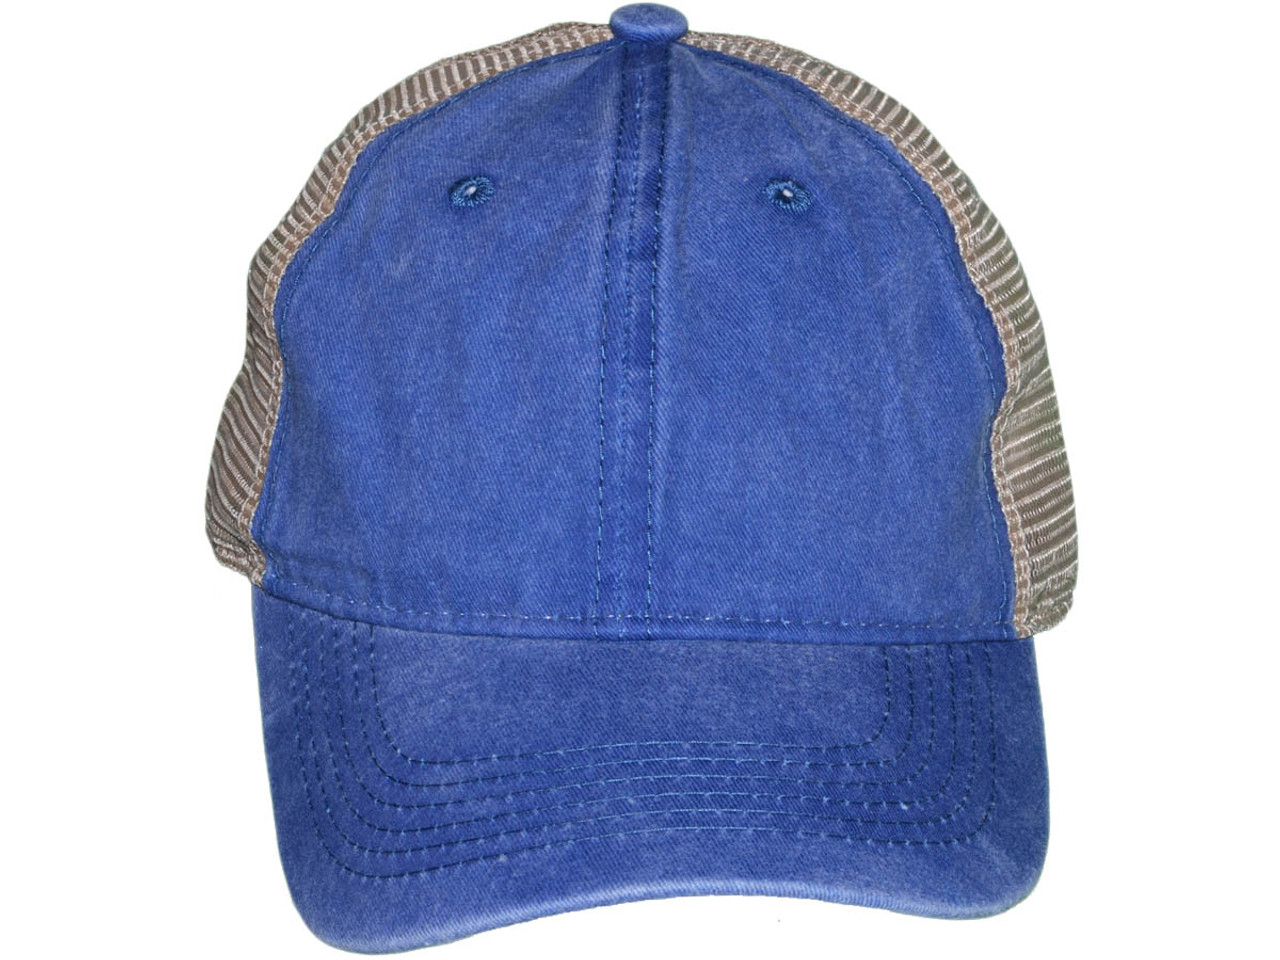 Wholesale Mesh Trucker Hats - BK Caps Low Profile Unstructured Pigment ...